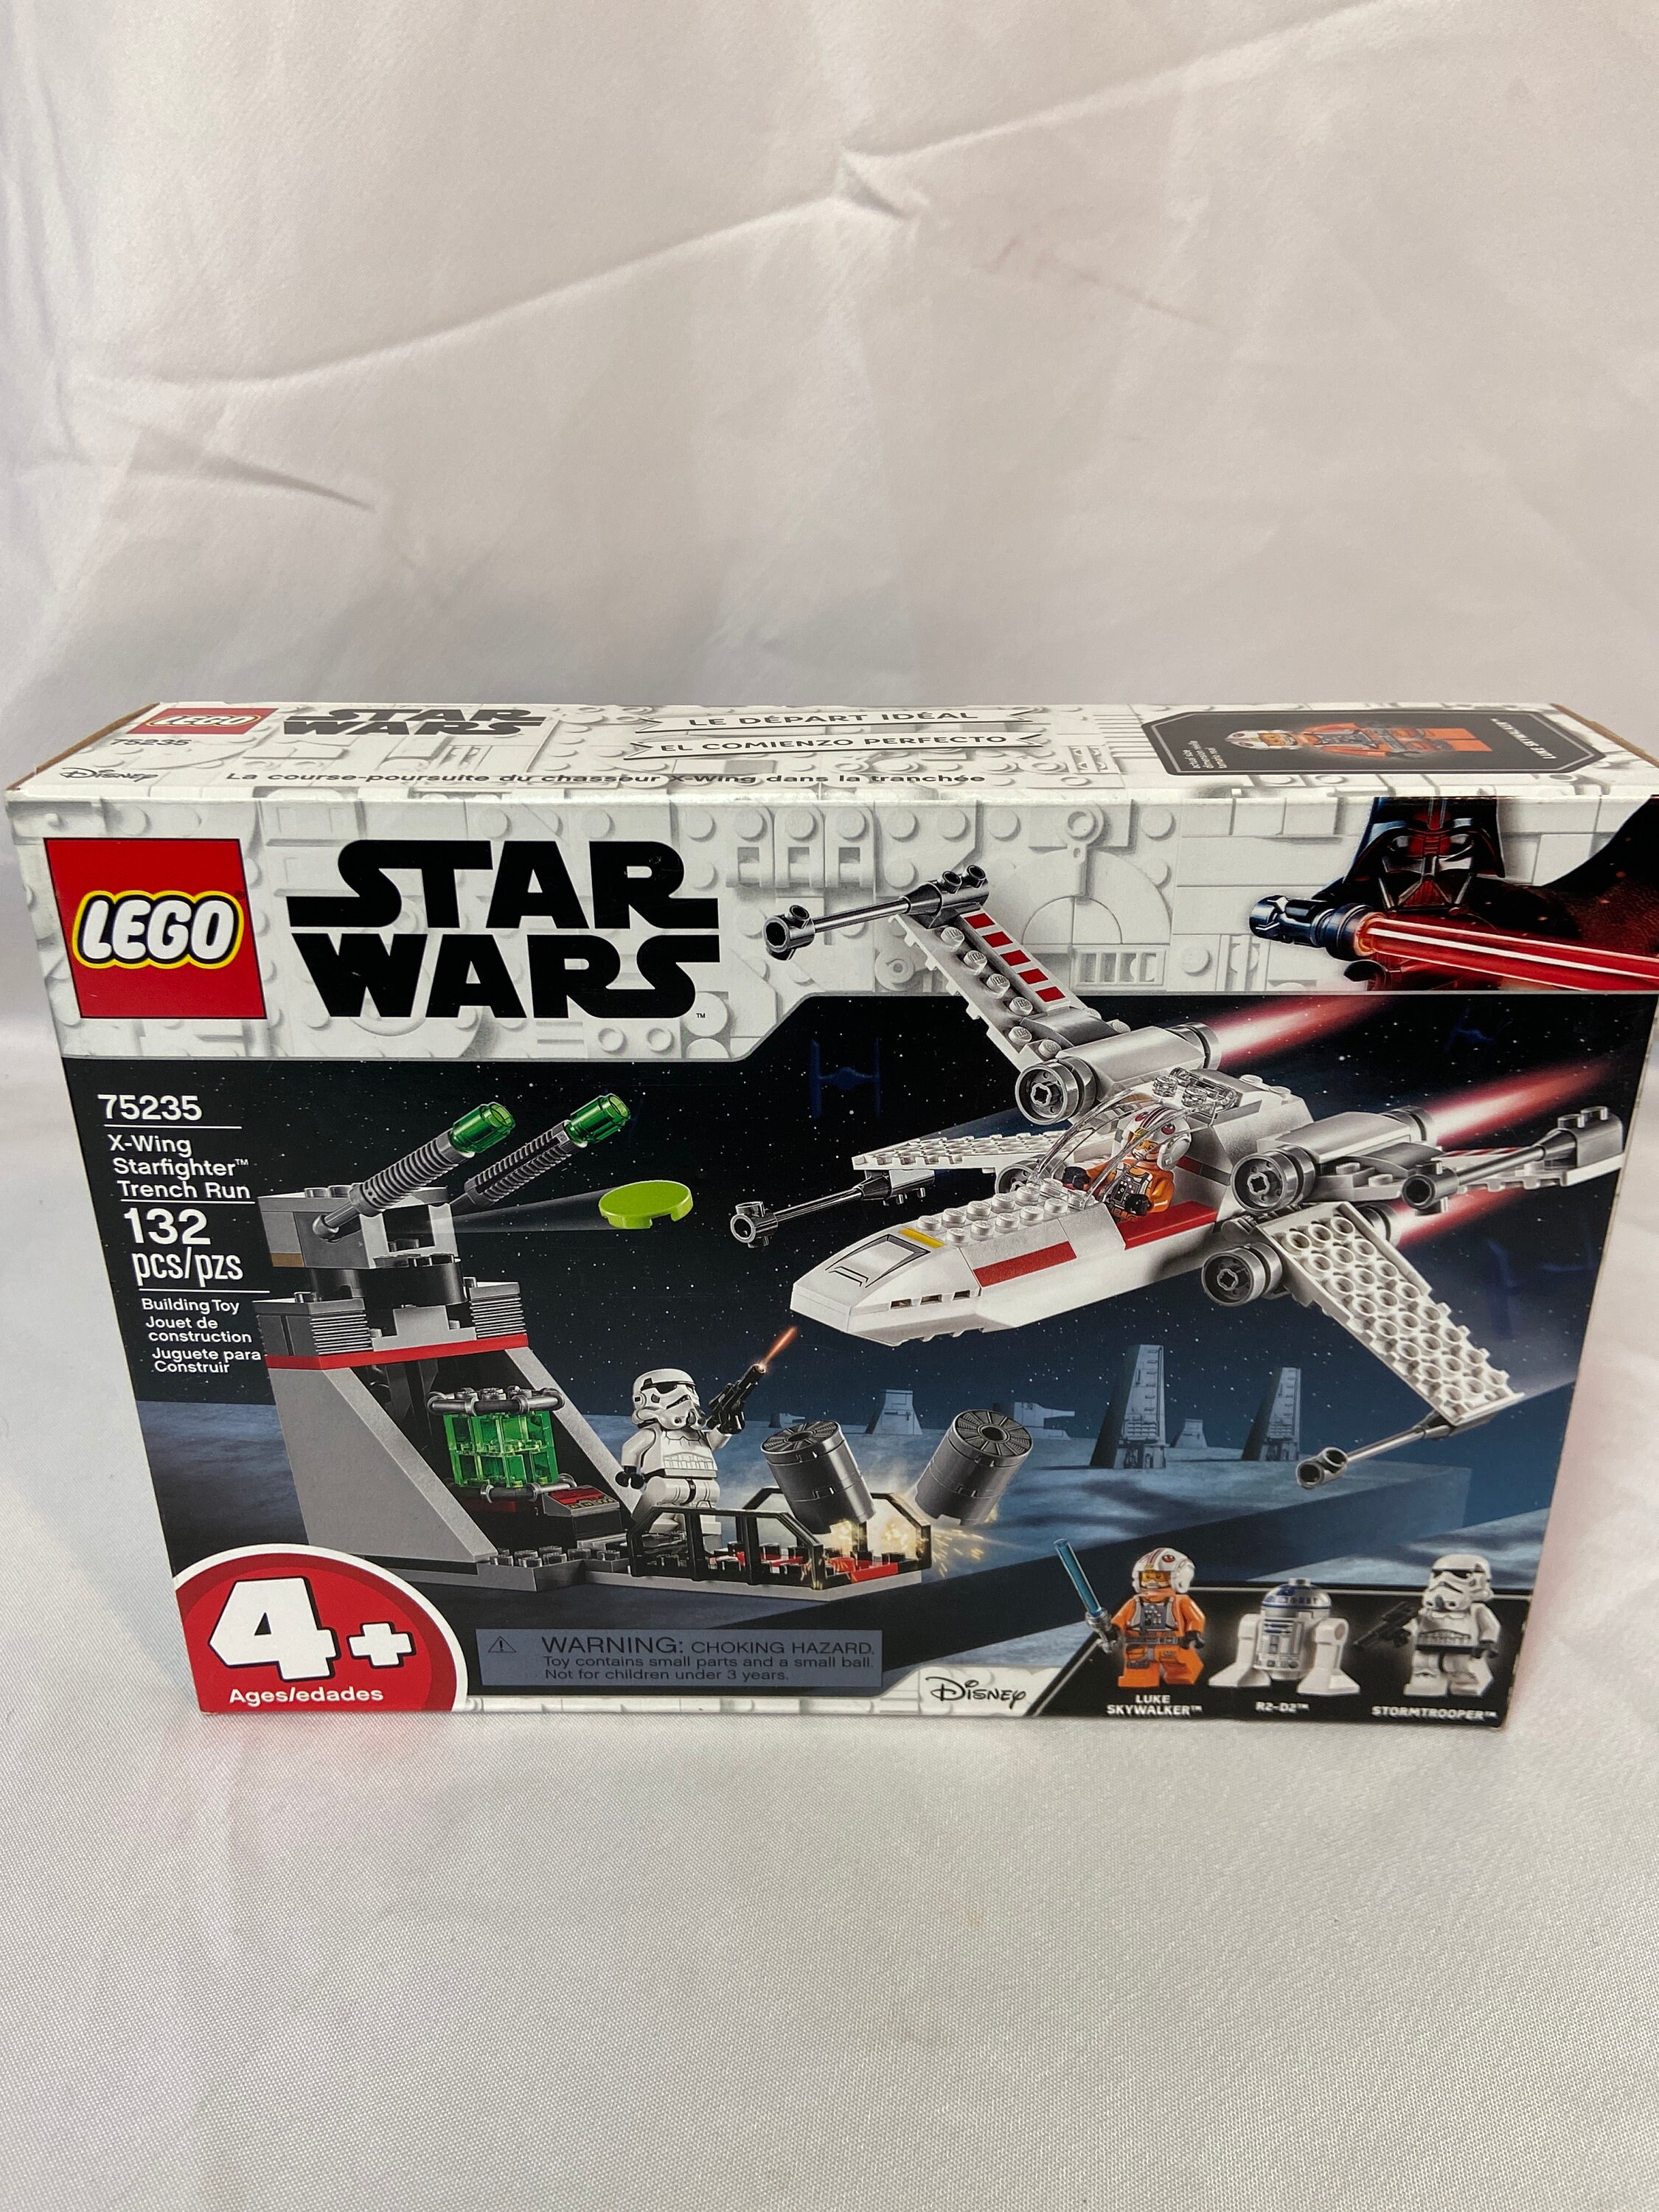 Set 75235 Disney Star Wars X-wing Starfighter Etsy